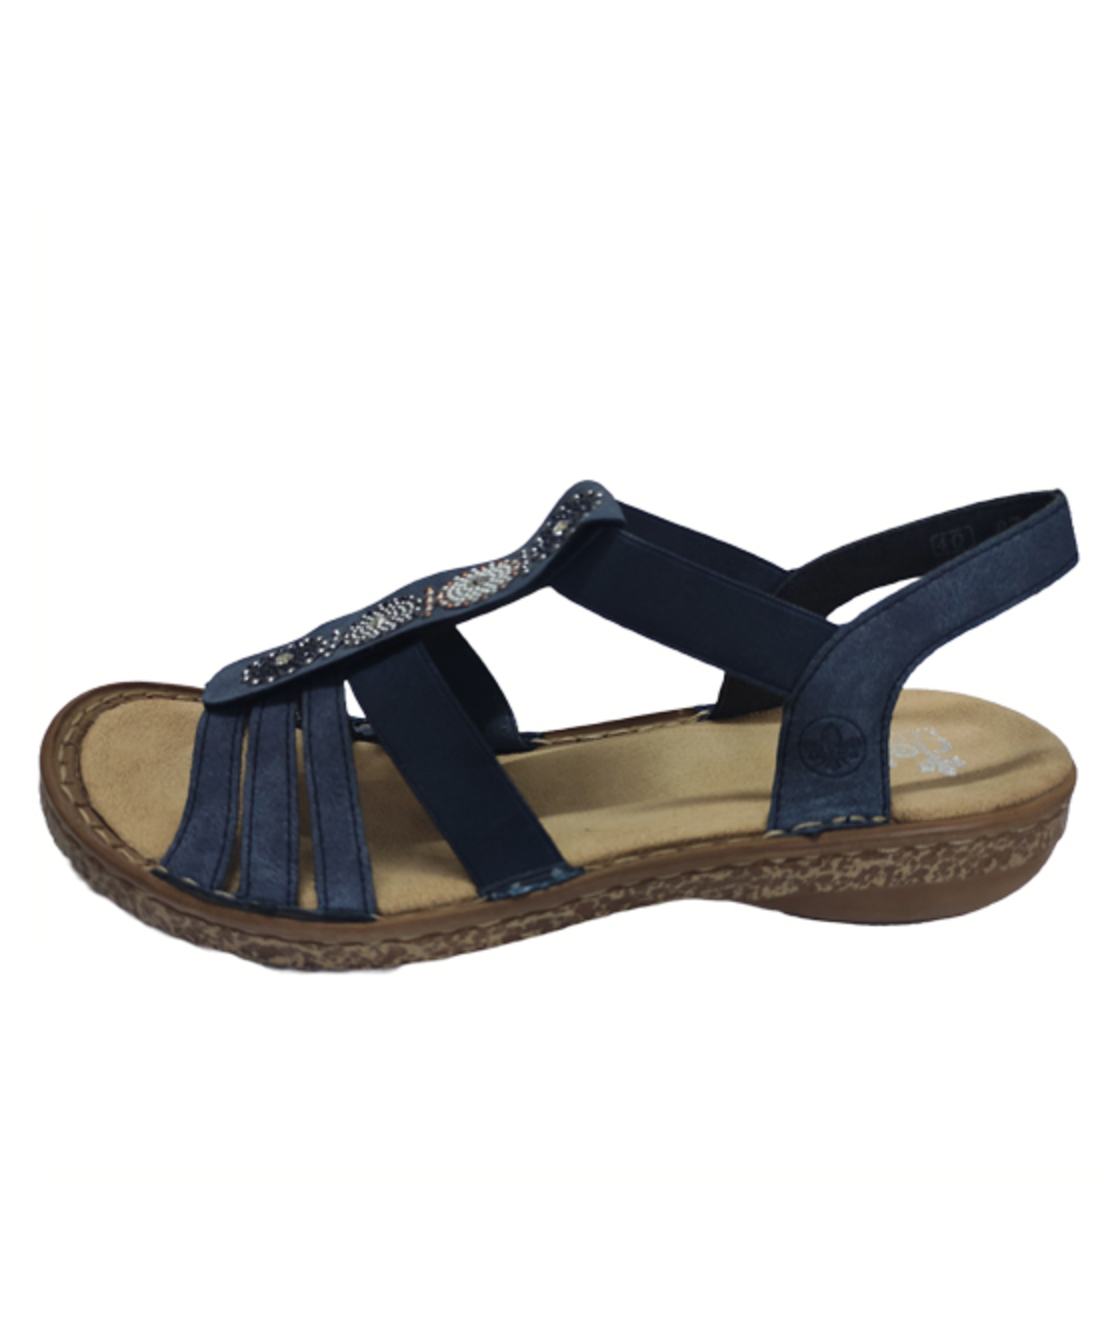 Ricker Sandals - 628G9-14 - Women